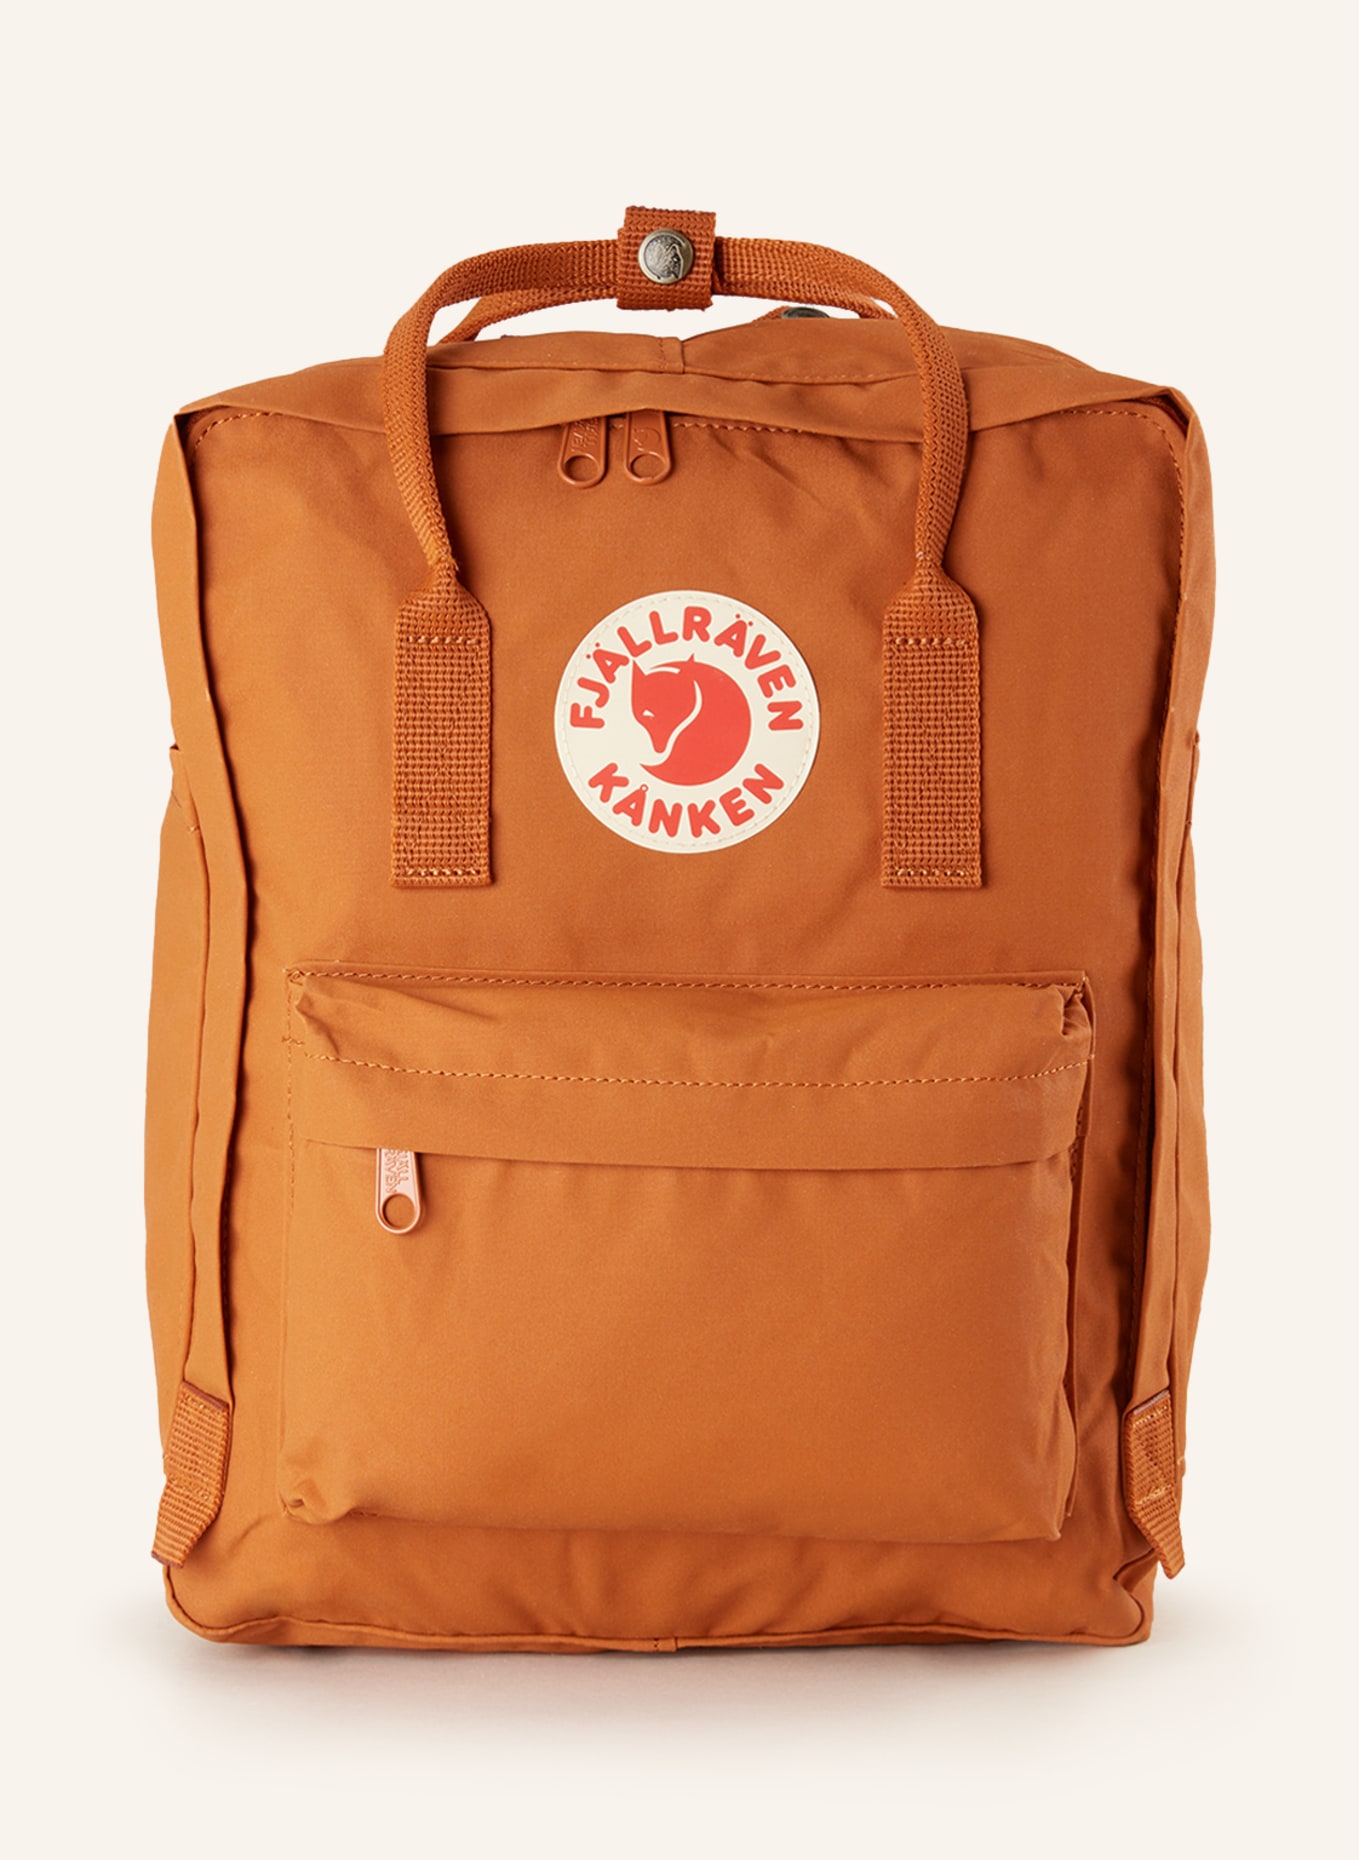 FJÄLLRÄVEN Backpack KANKEN 16 l, Color: 243 Desert Brown (Image 1)